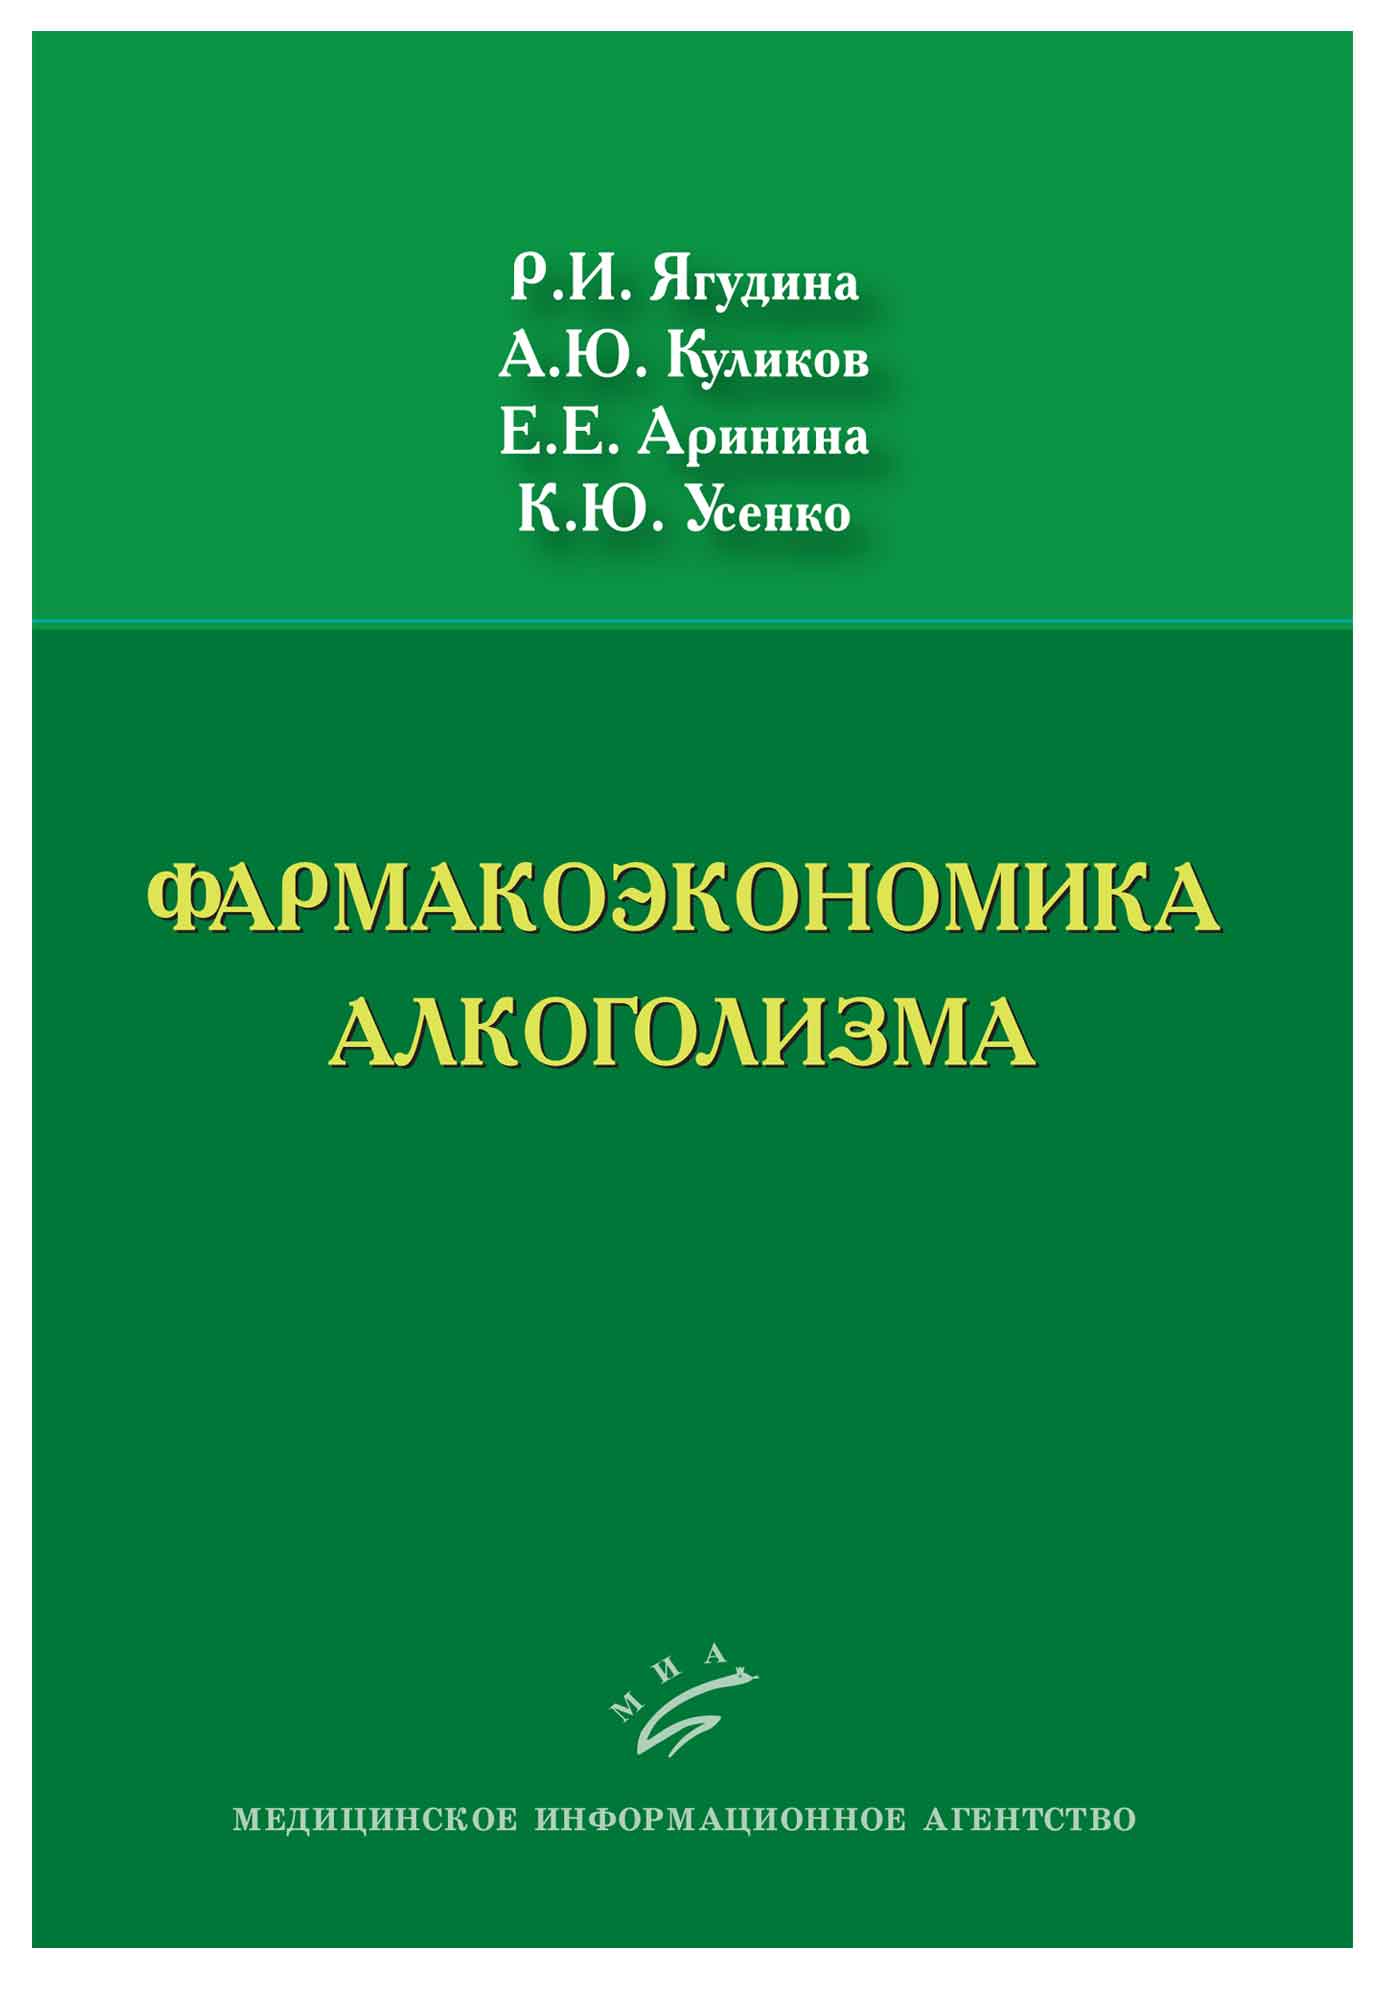 book Краткий словарь современных